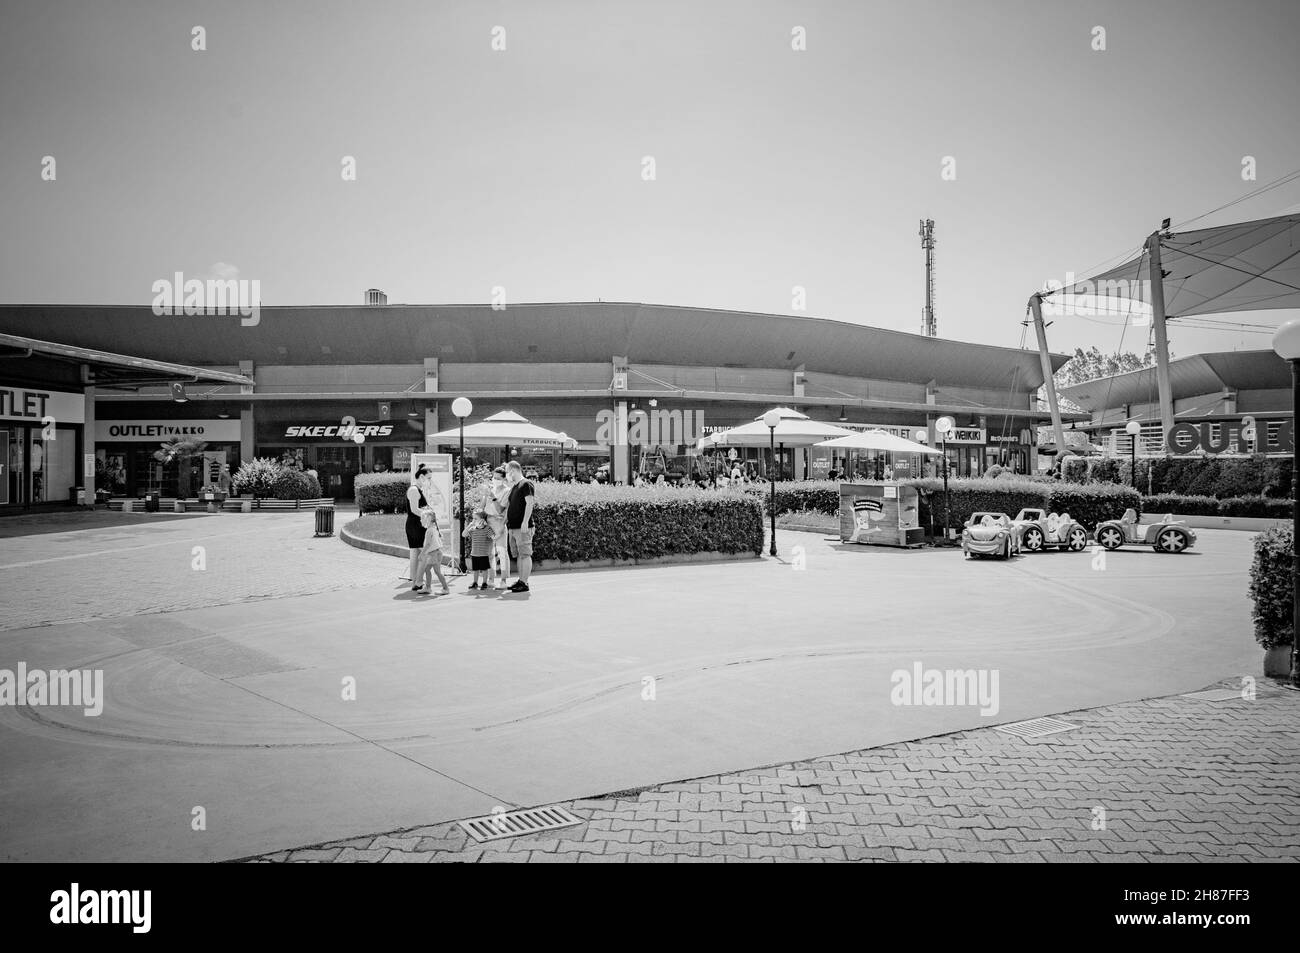 IZMIT, TURCHIA. AGOSTO 29, 2021. Negozio outlet villaggio Skecher sullo sfondo. Gente che cammina intorno Foto Stock